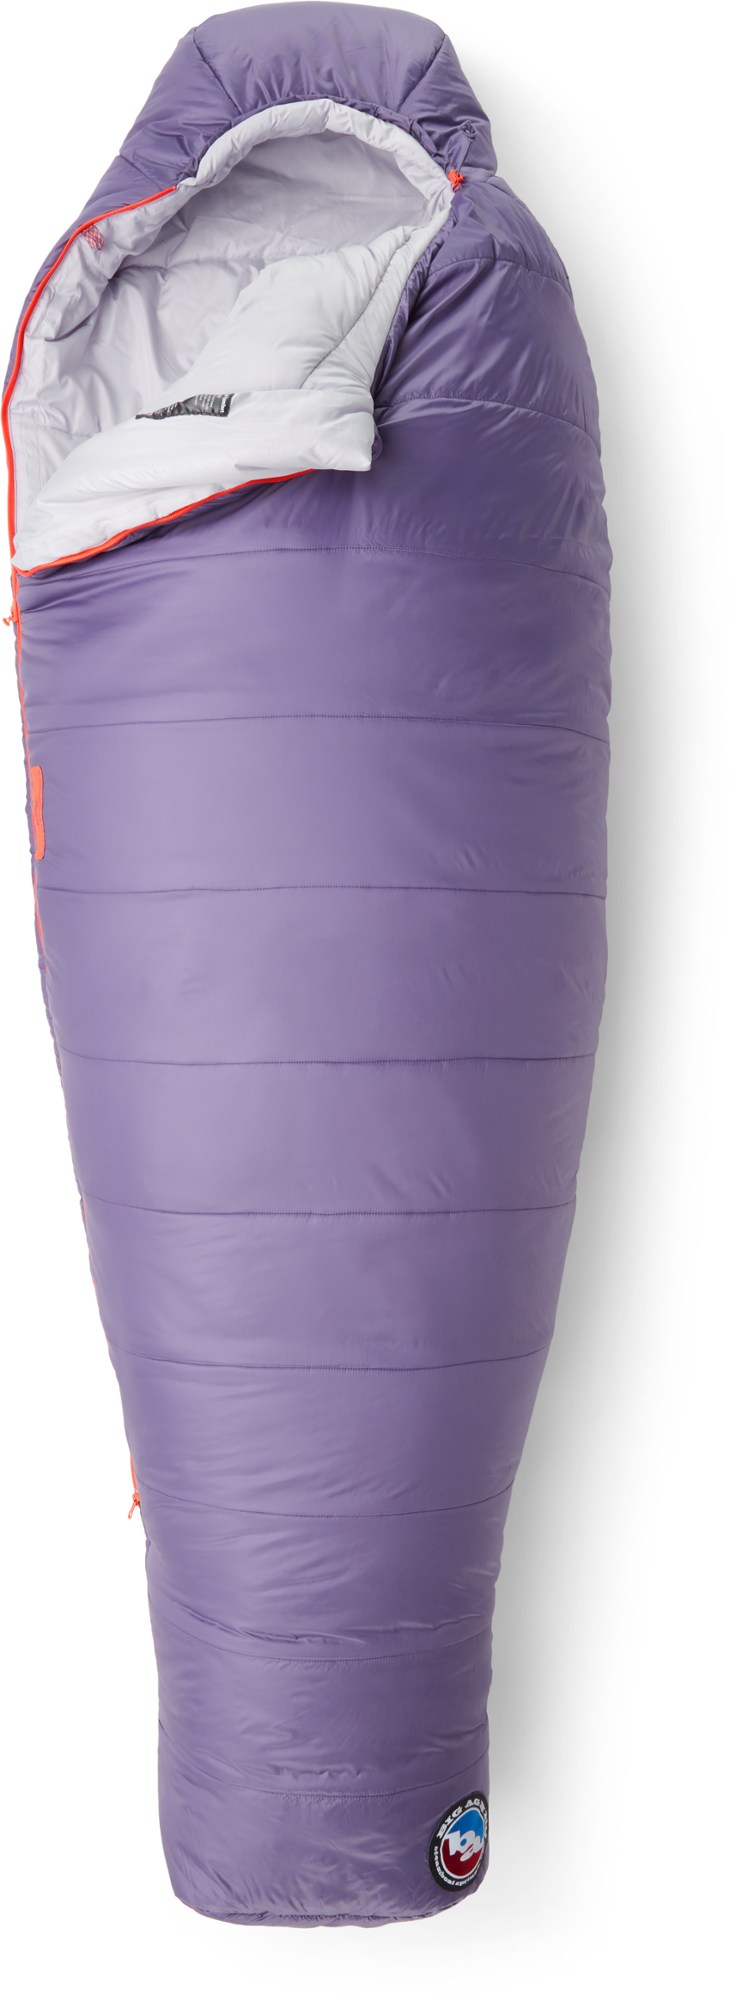 Спальный мешок Anthracite 20 - женский Big Agnes, фиолетовый